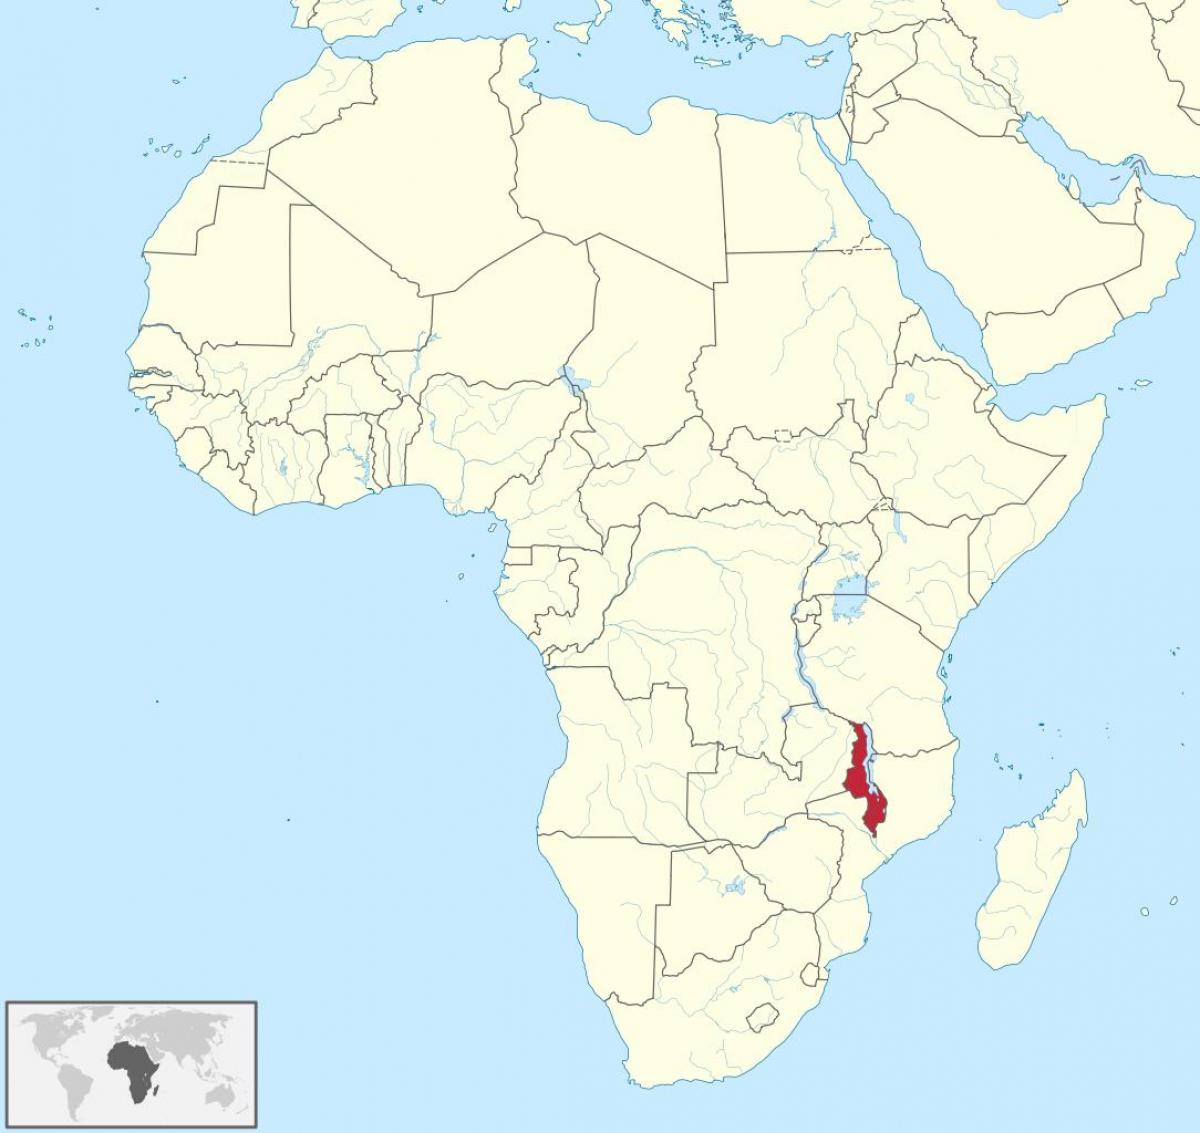 mapa afrikan erakutsiz Malawi